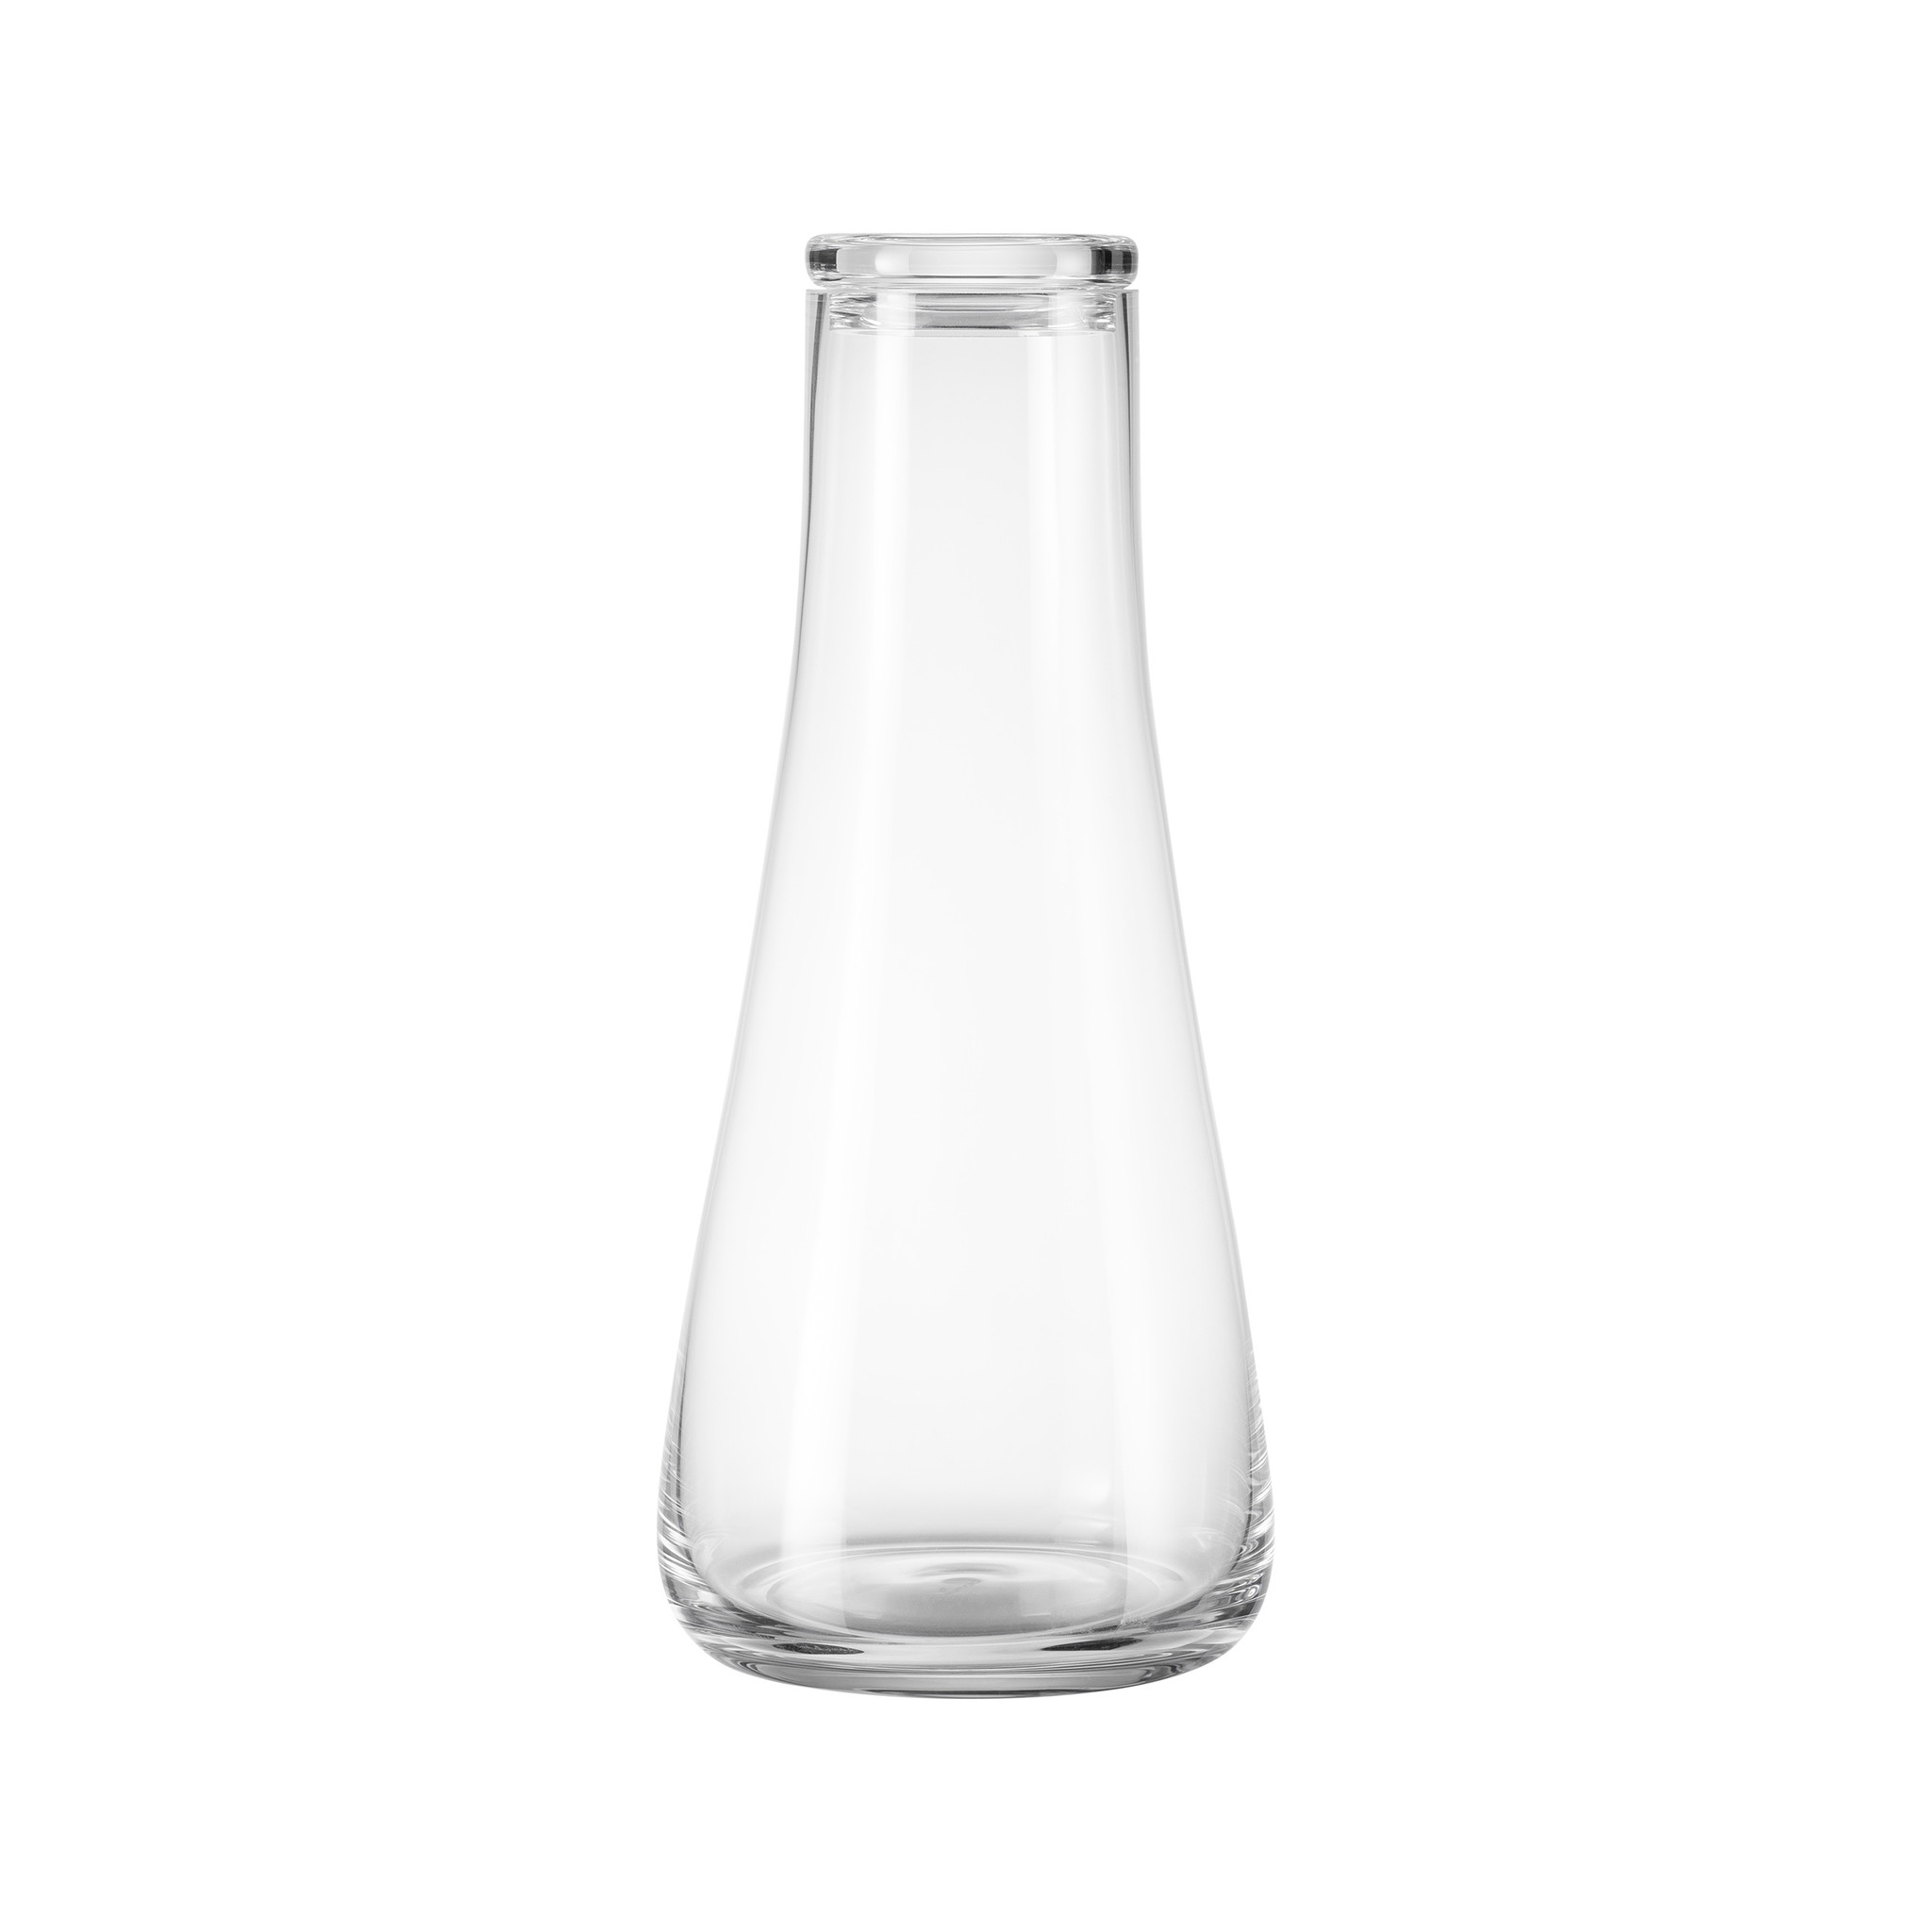 Caraffa per acqua Blomus Belo - vetro trasparente - vetro soffiato